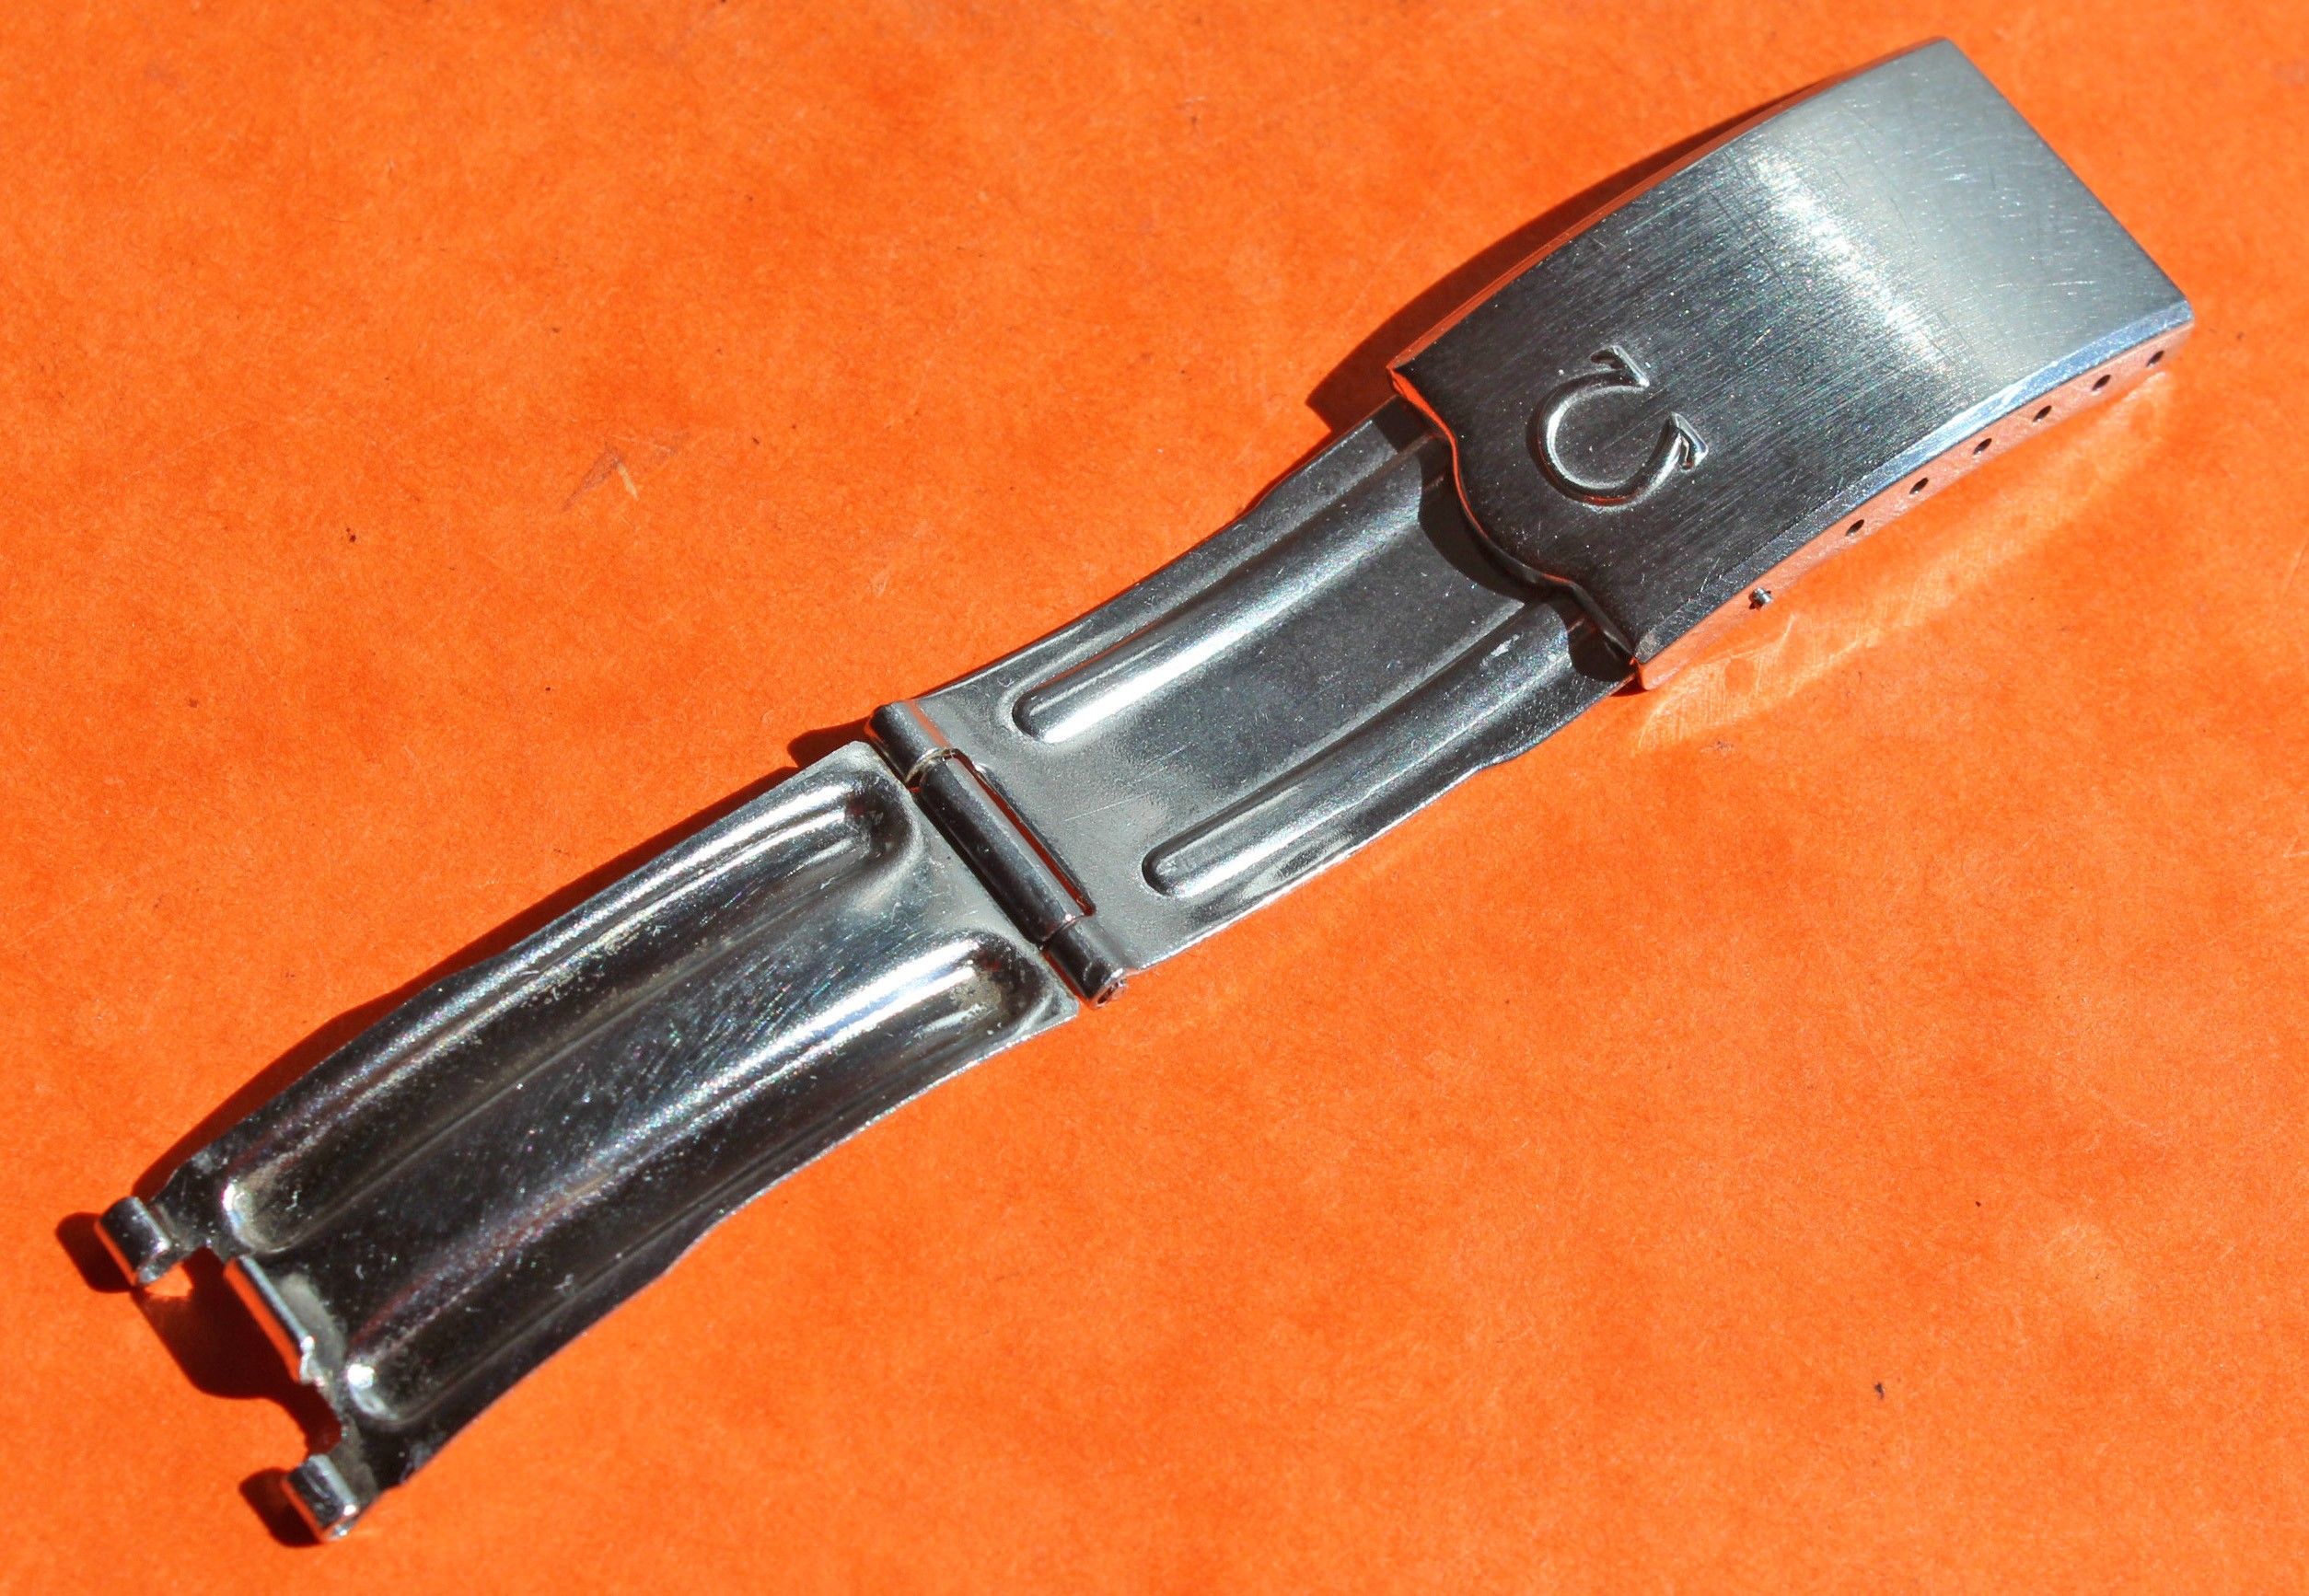 SMP 300 on OEM Speedmaster Flat Link Bracelet : r/OmegaWatches